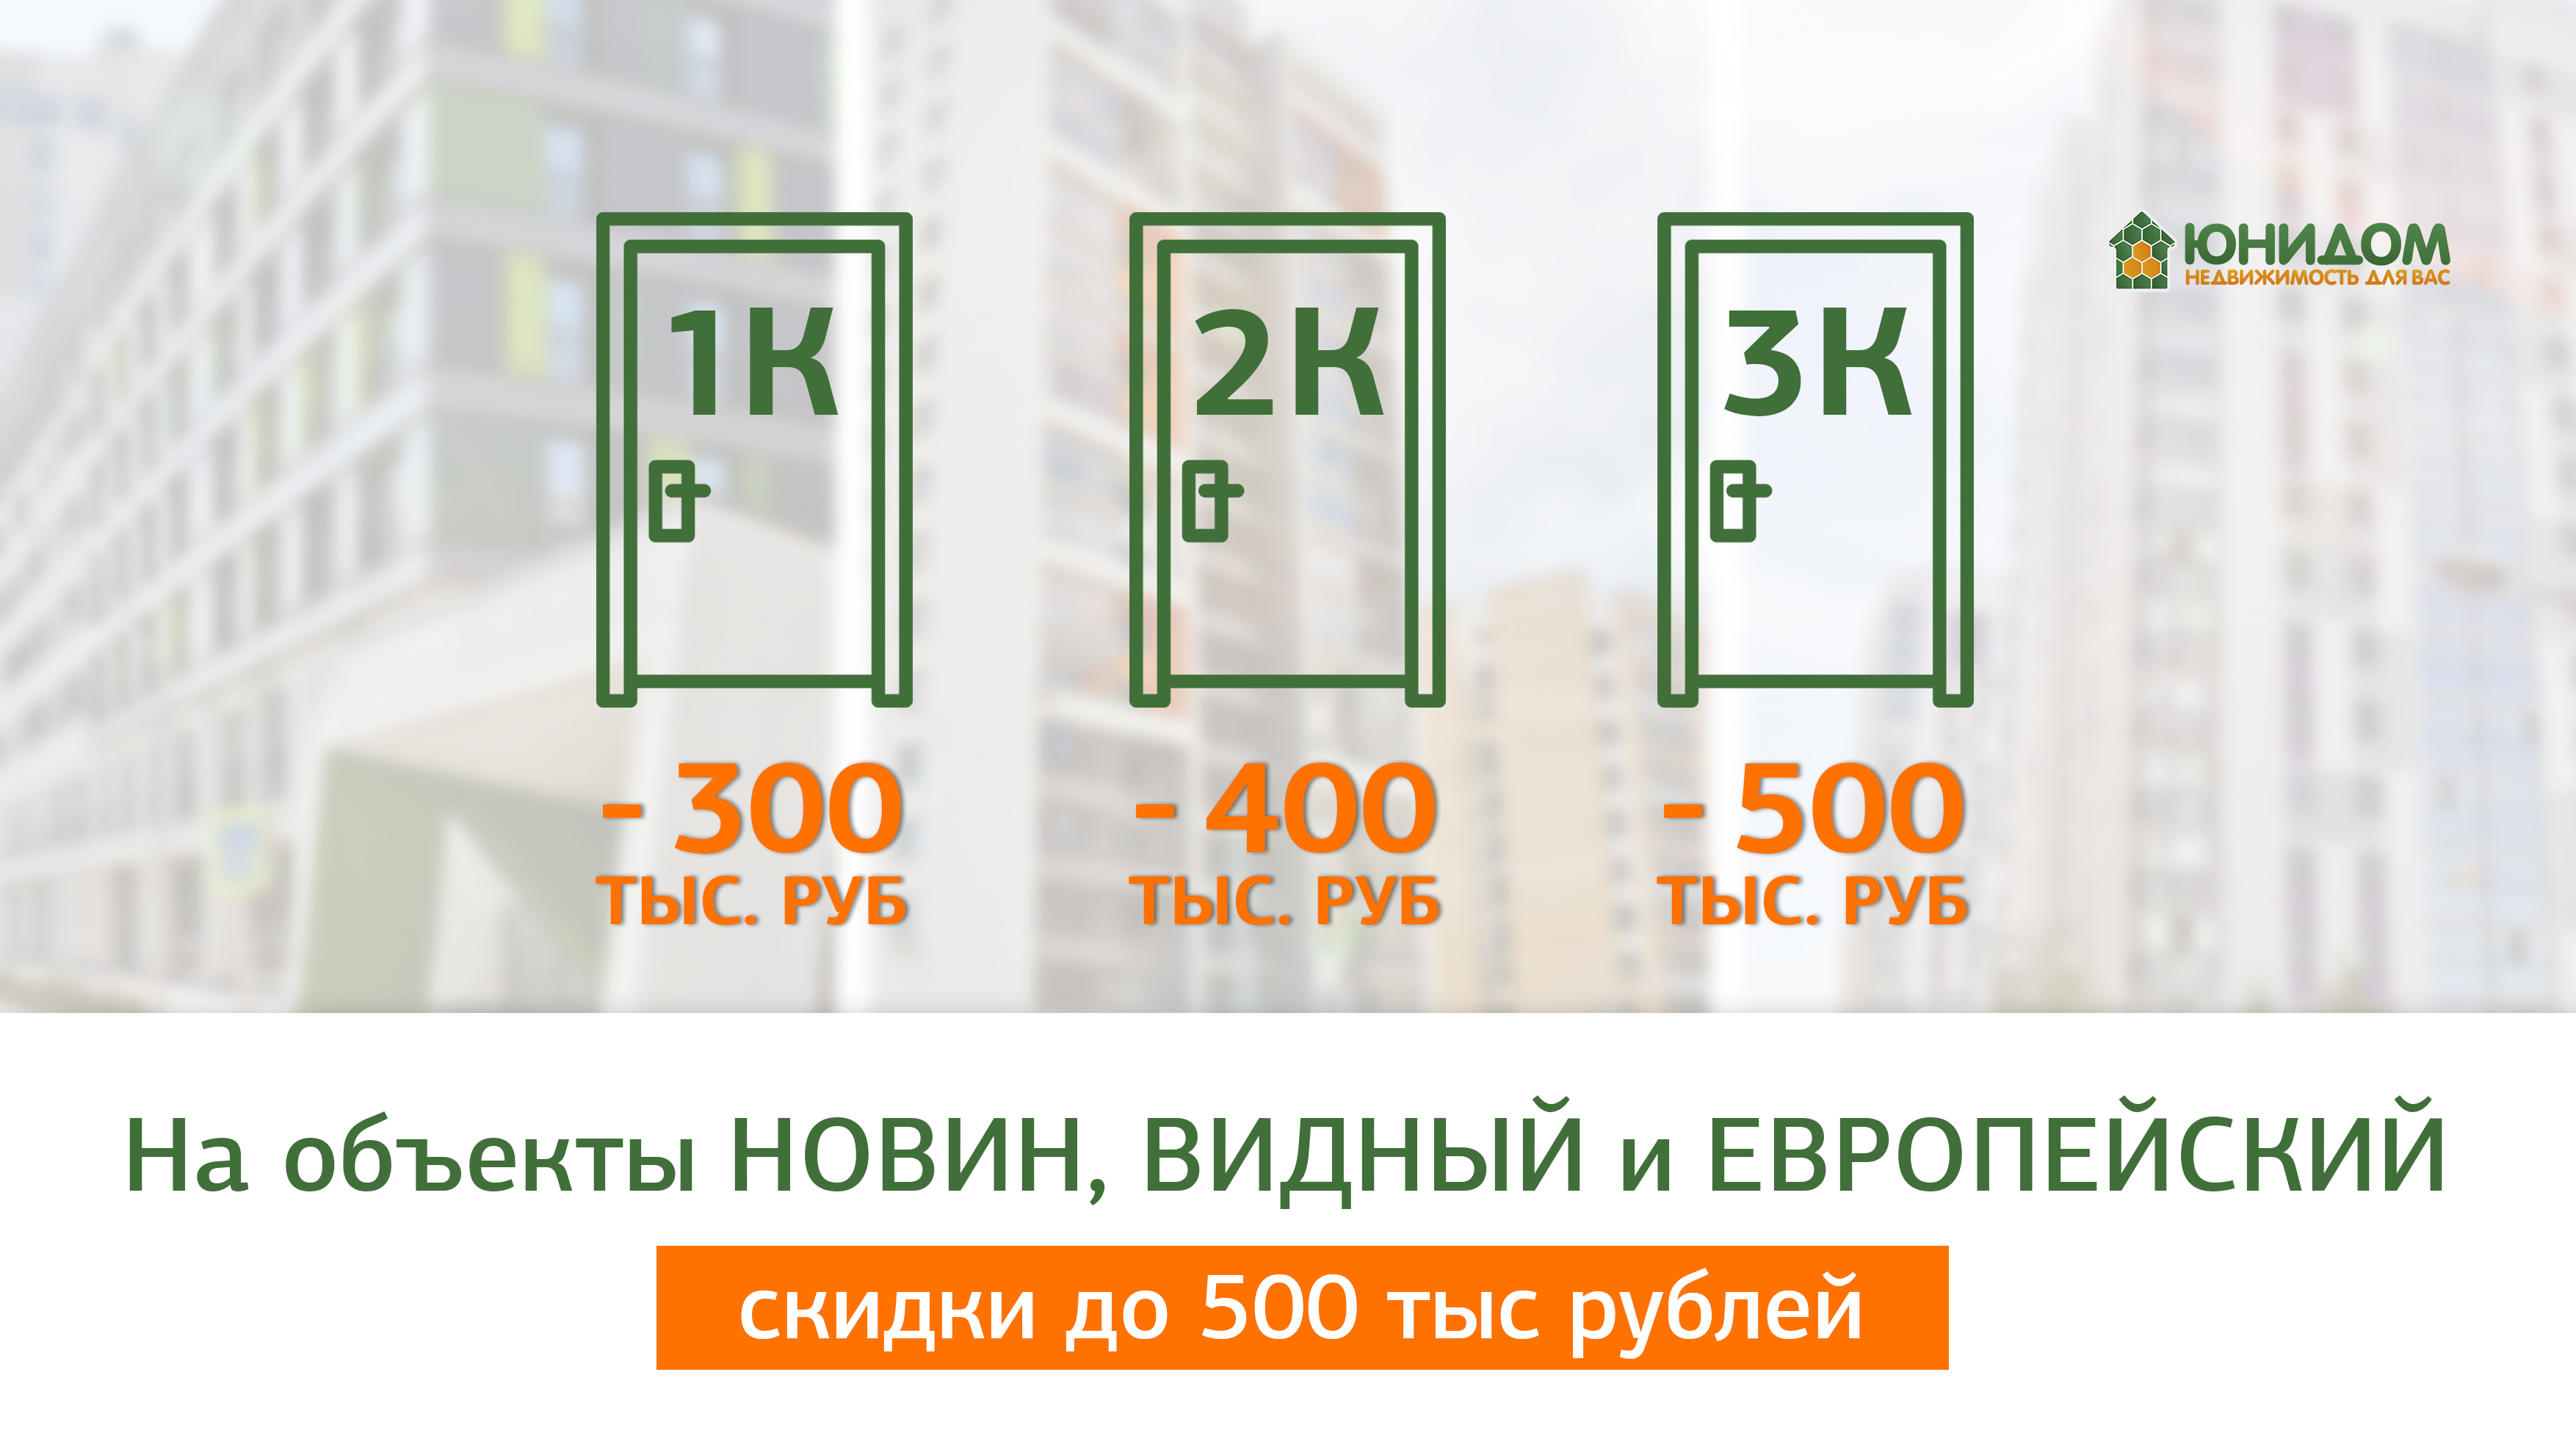 Квартиры в Тюмени со скидками до 500 тысяч рублей!